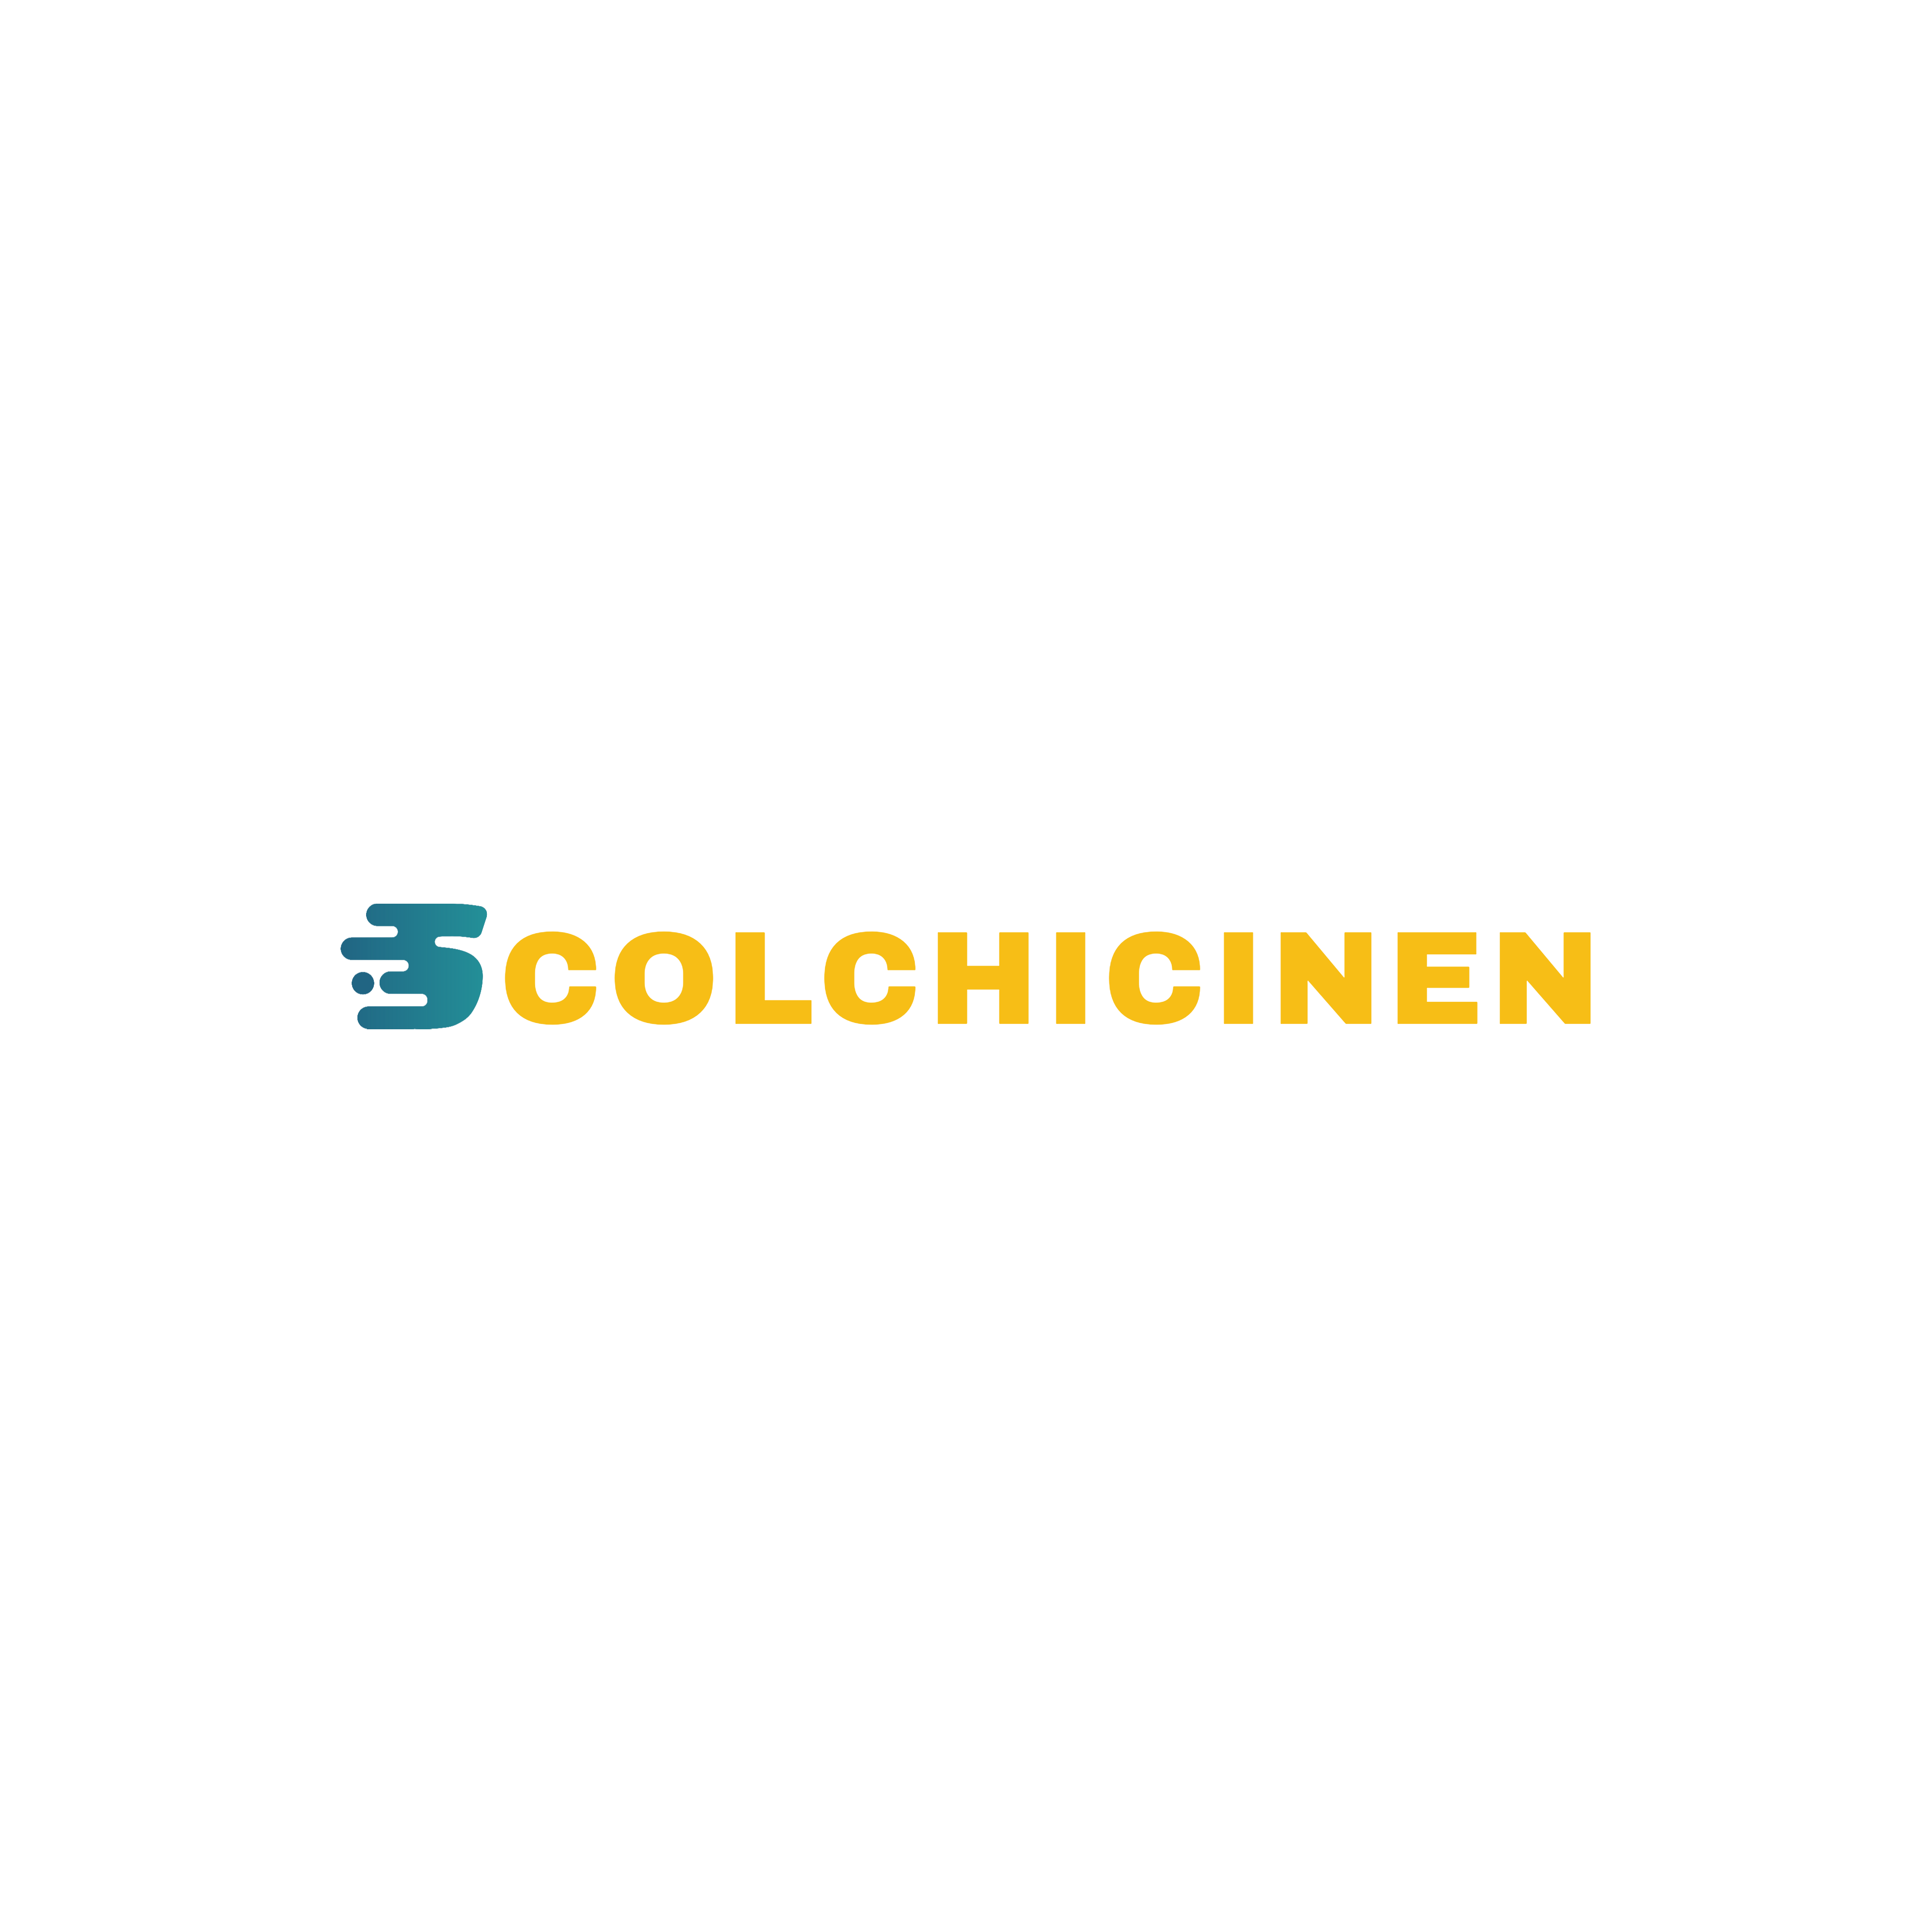 logo-colchicinen-1